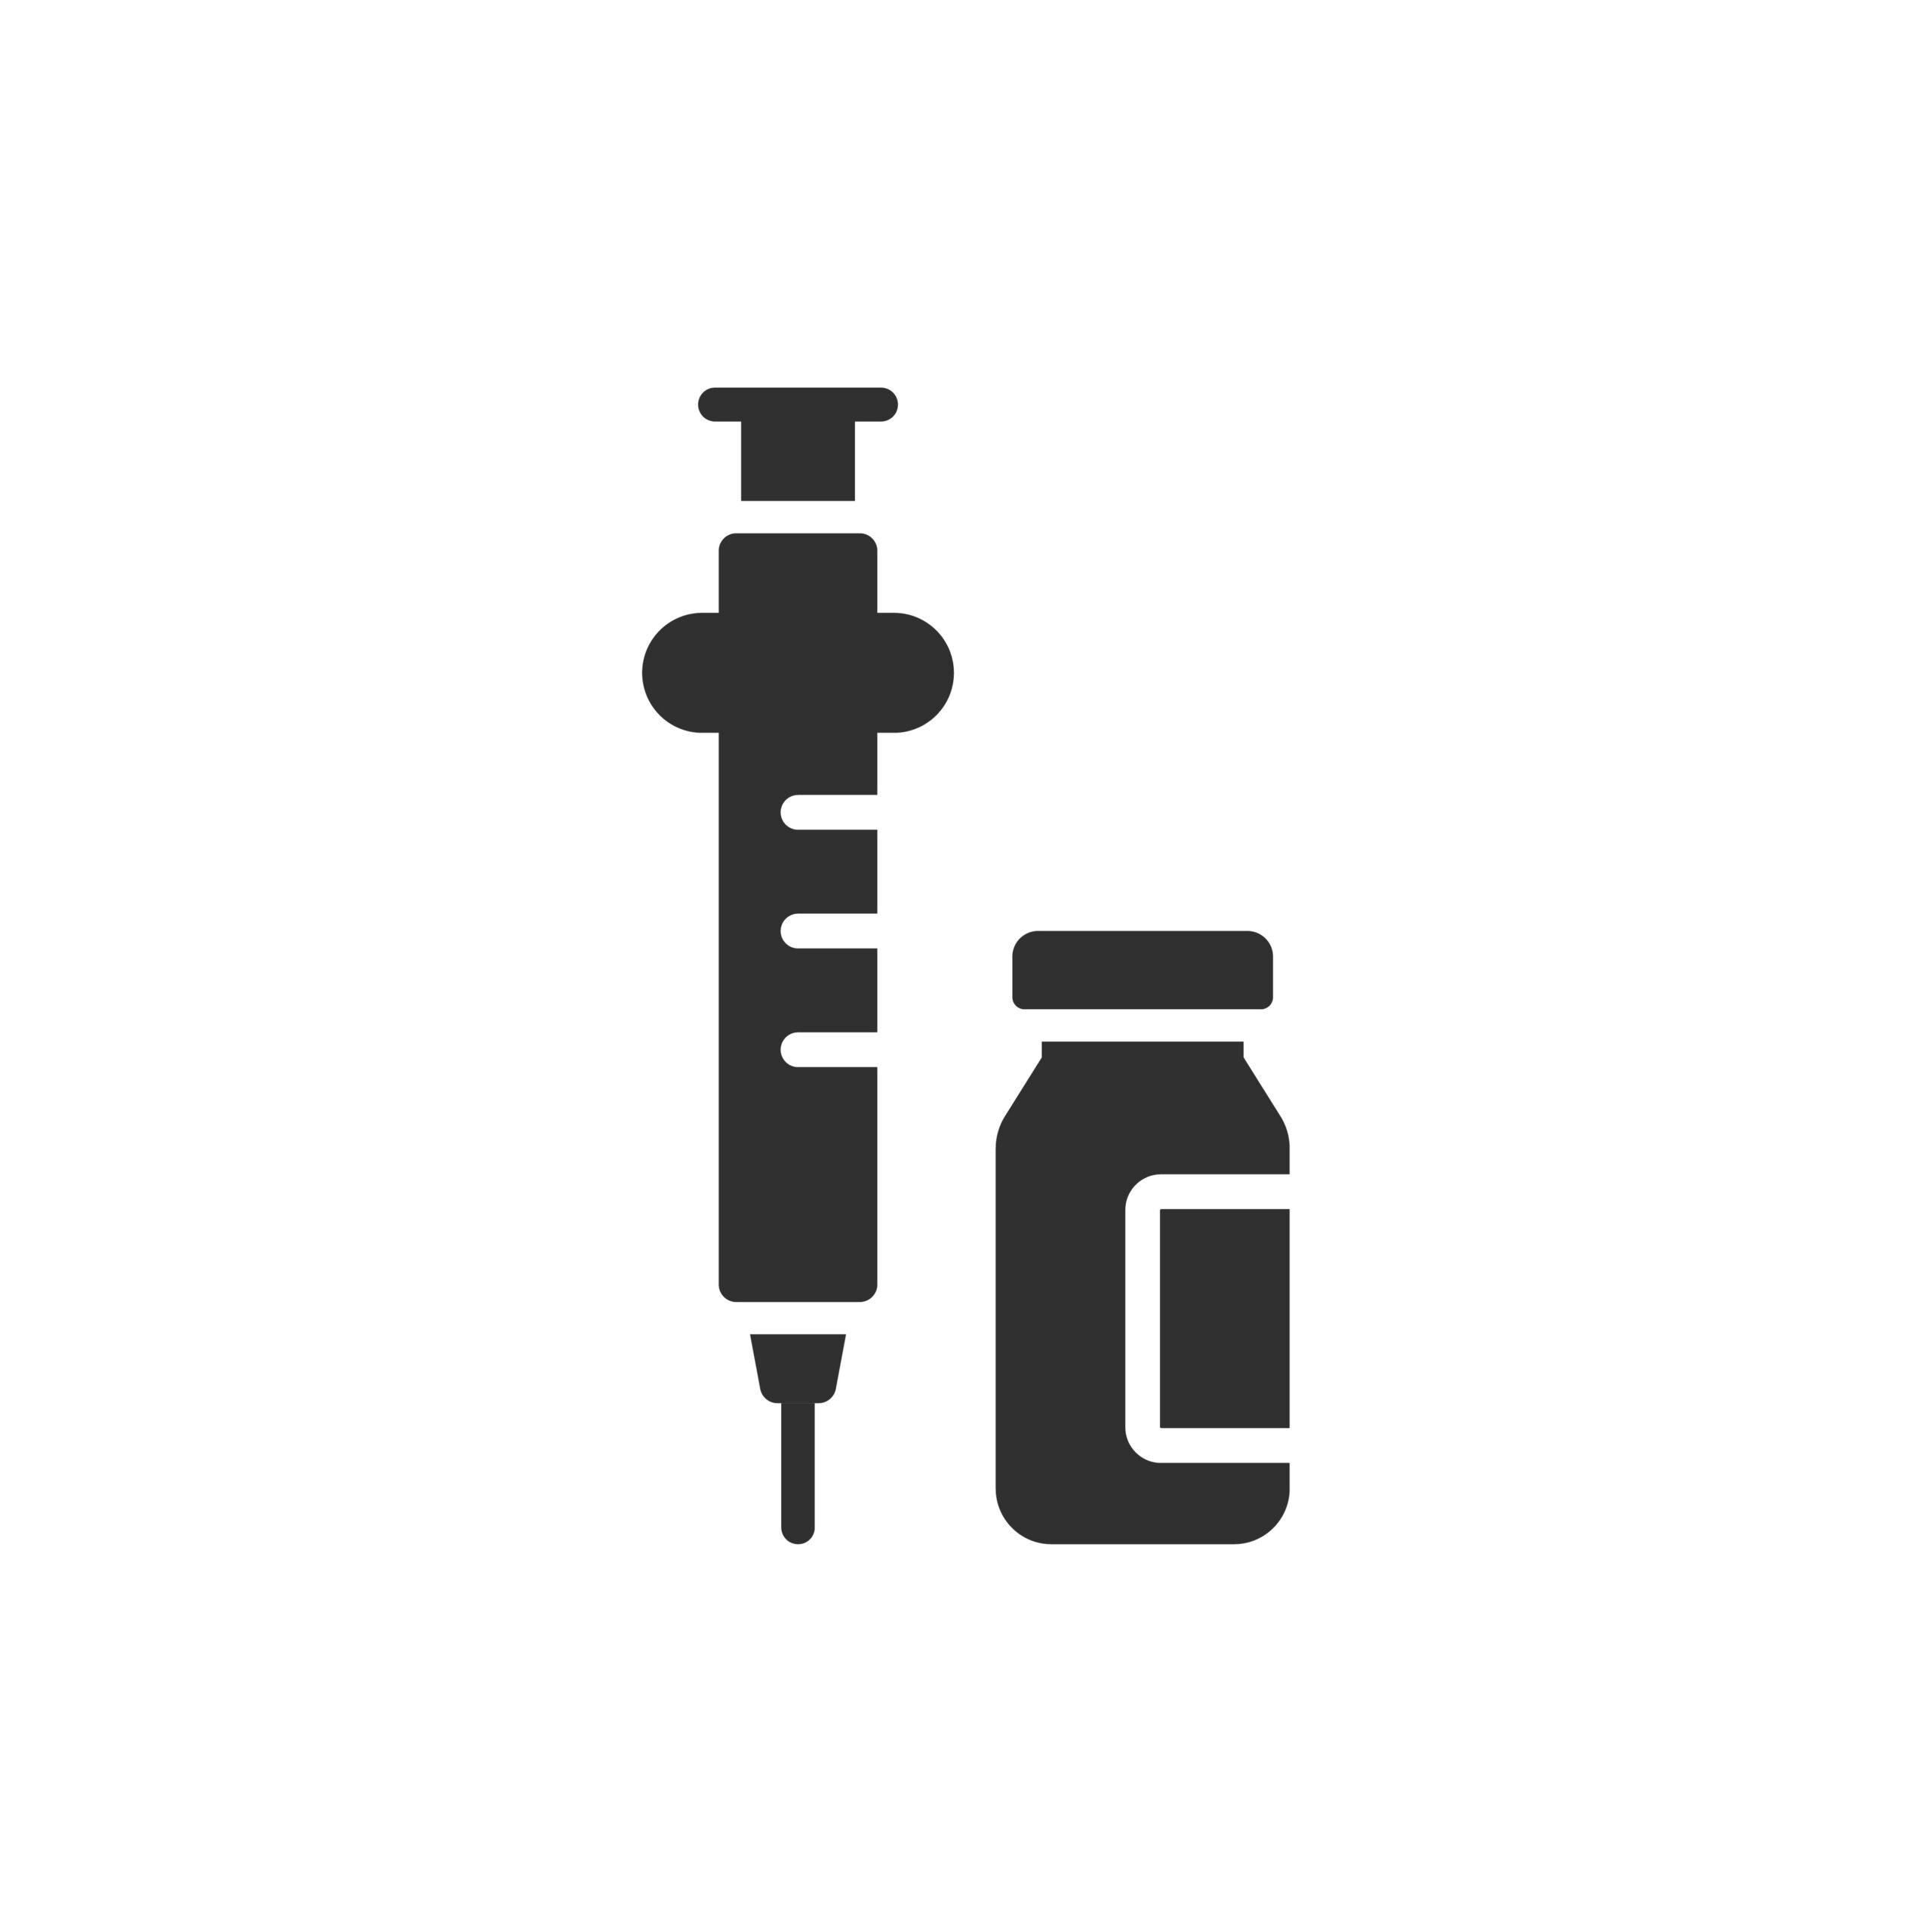 Syringe and Ketamine Vial